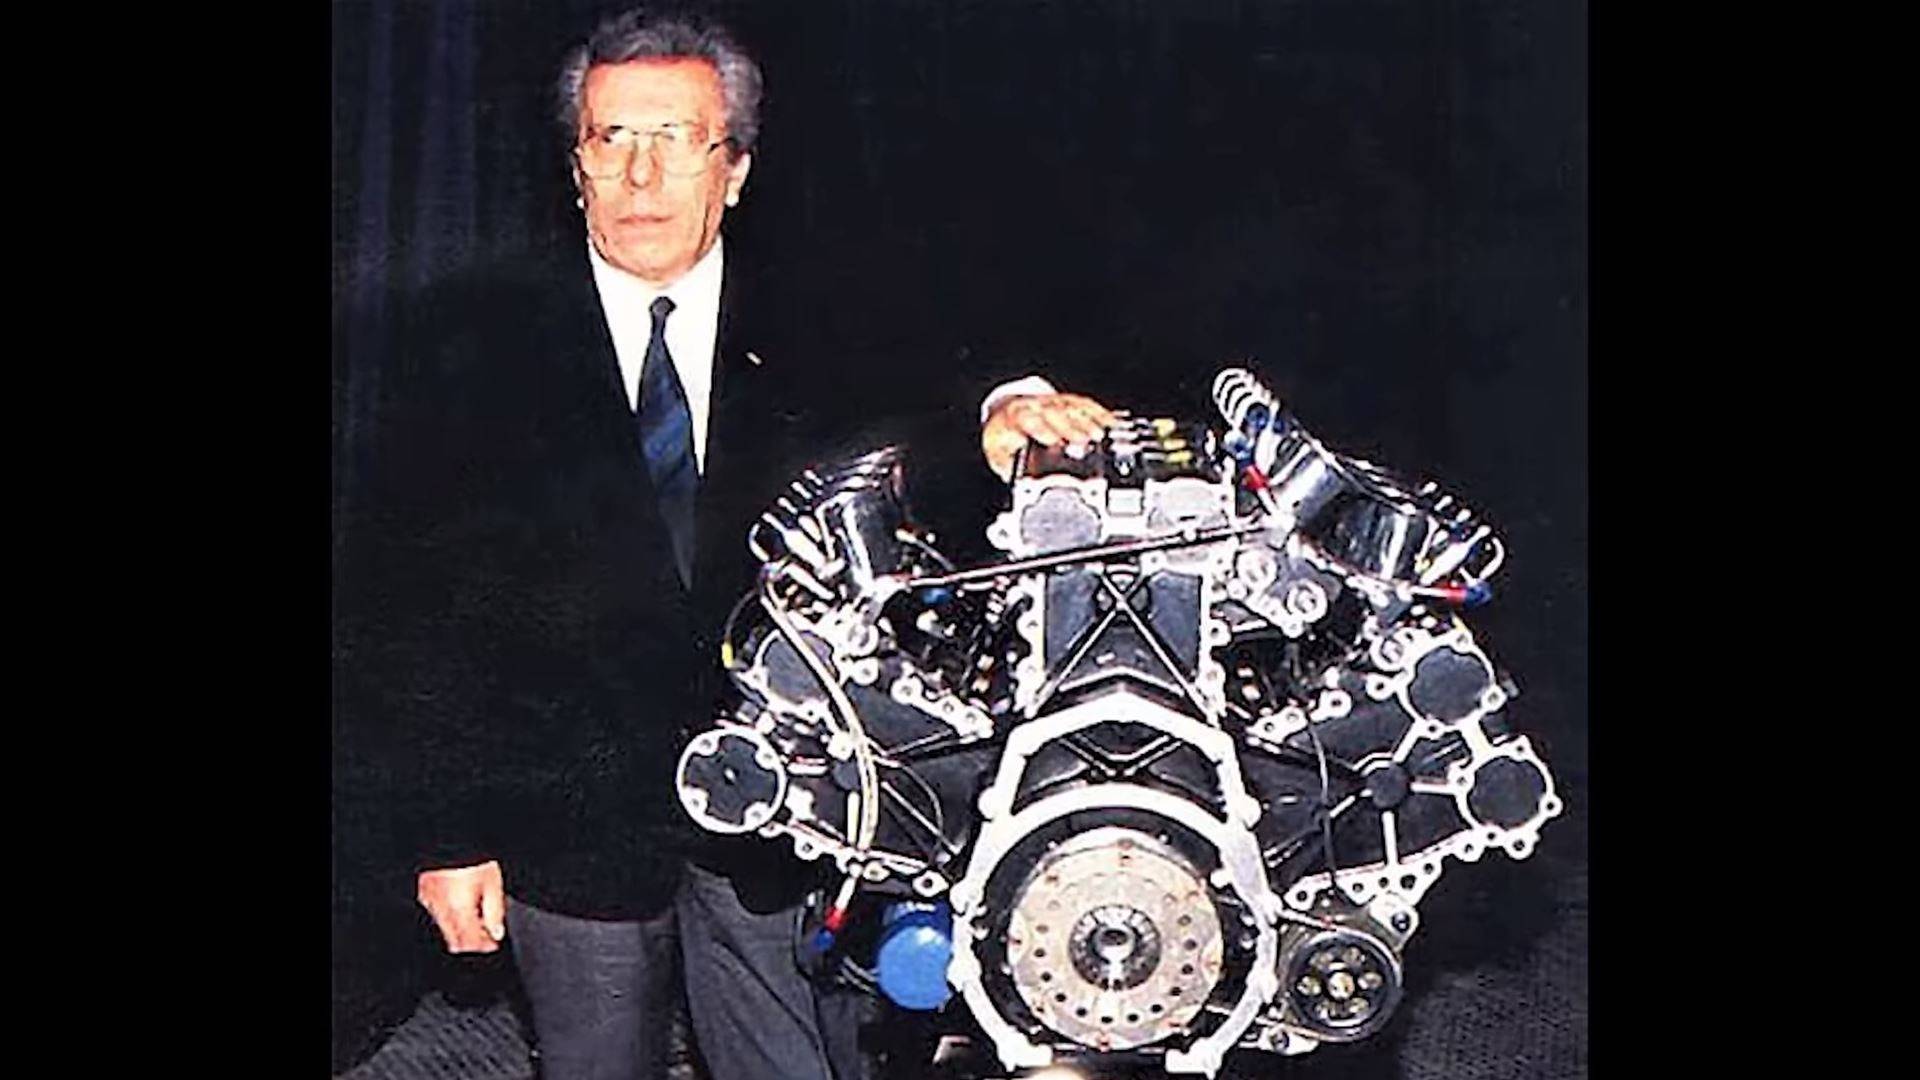 F1 car with W16 engine